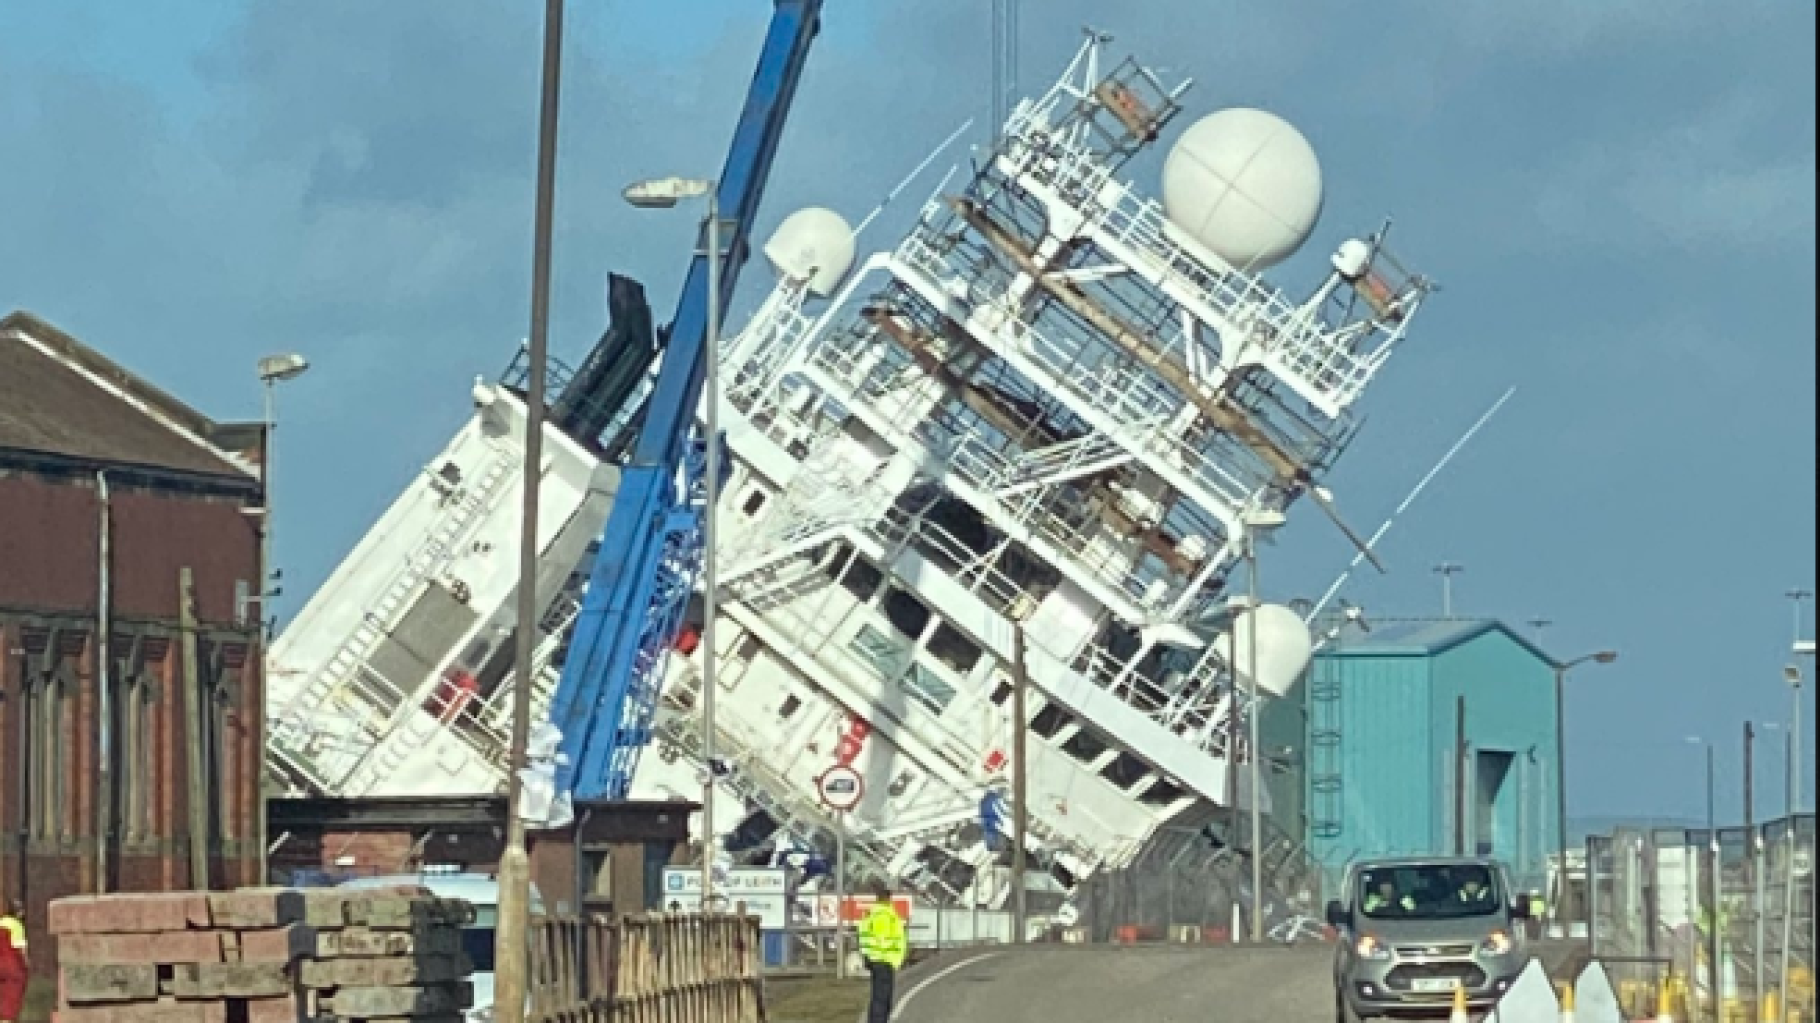 In Edinburgh kapseist het Petrel-schip op de scheepswerf, waarbij verschillende mensen gewond raken